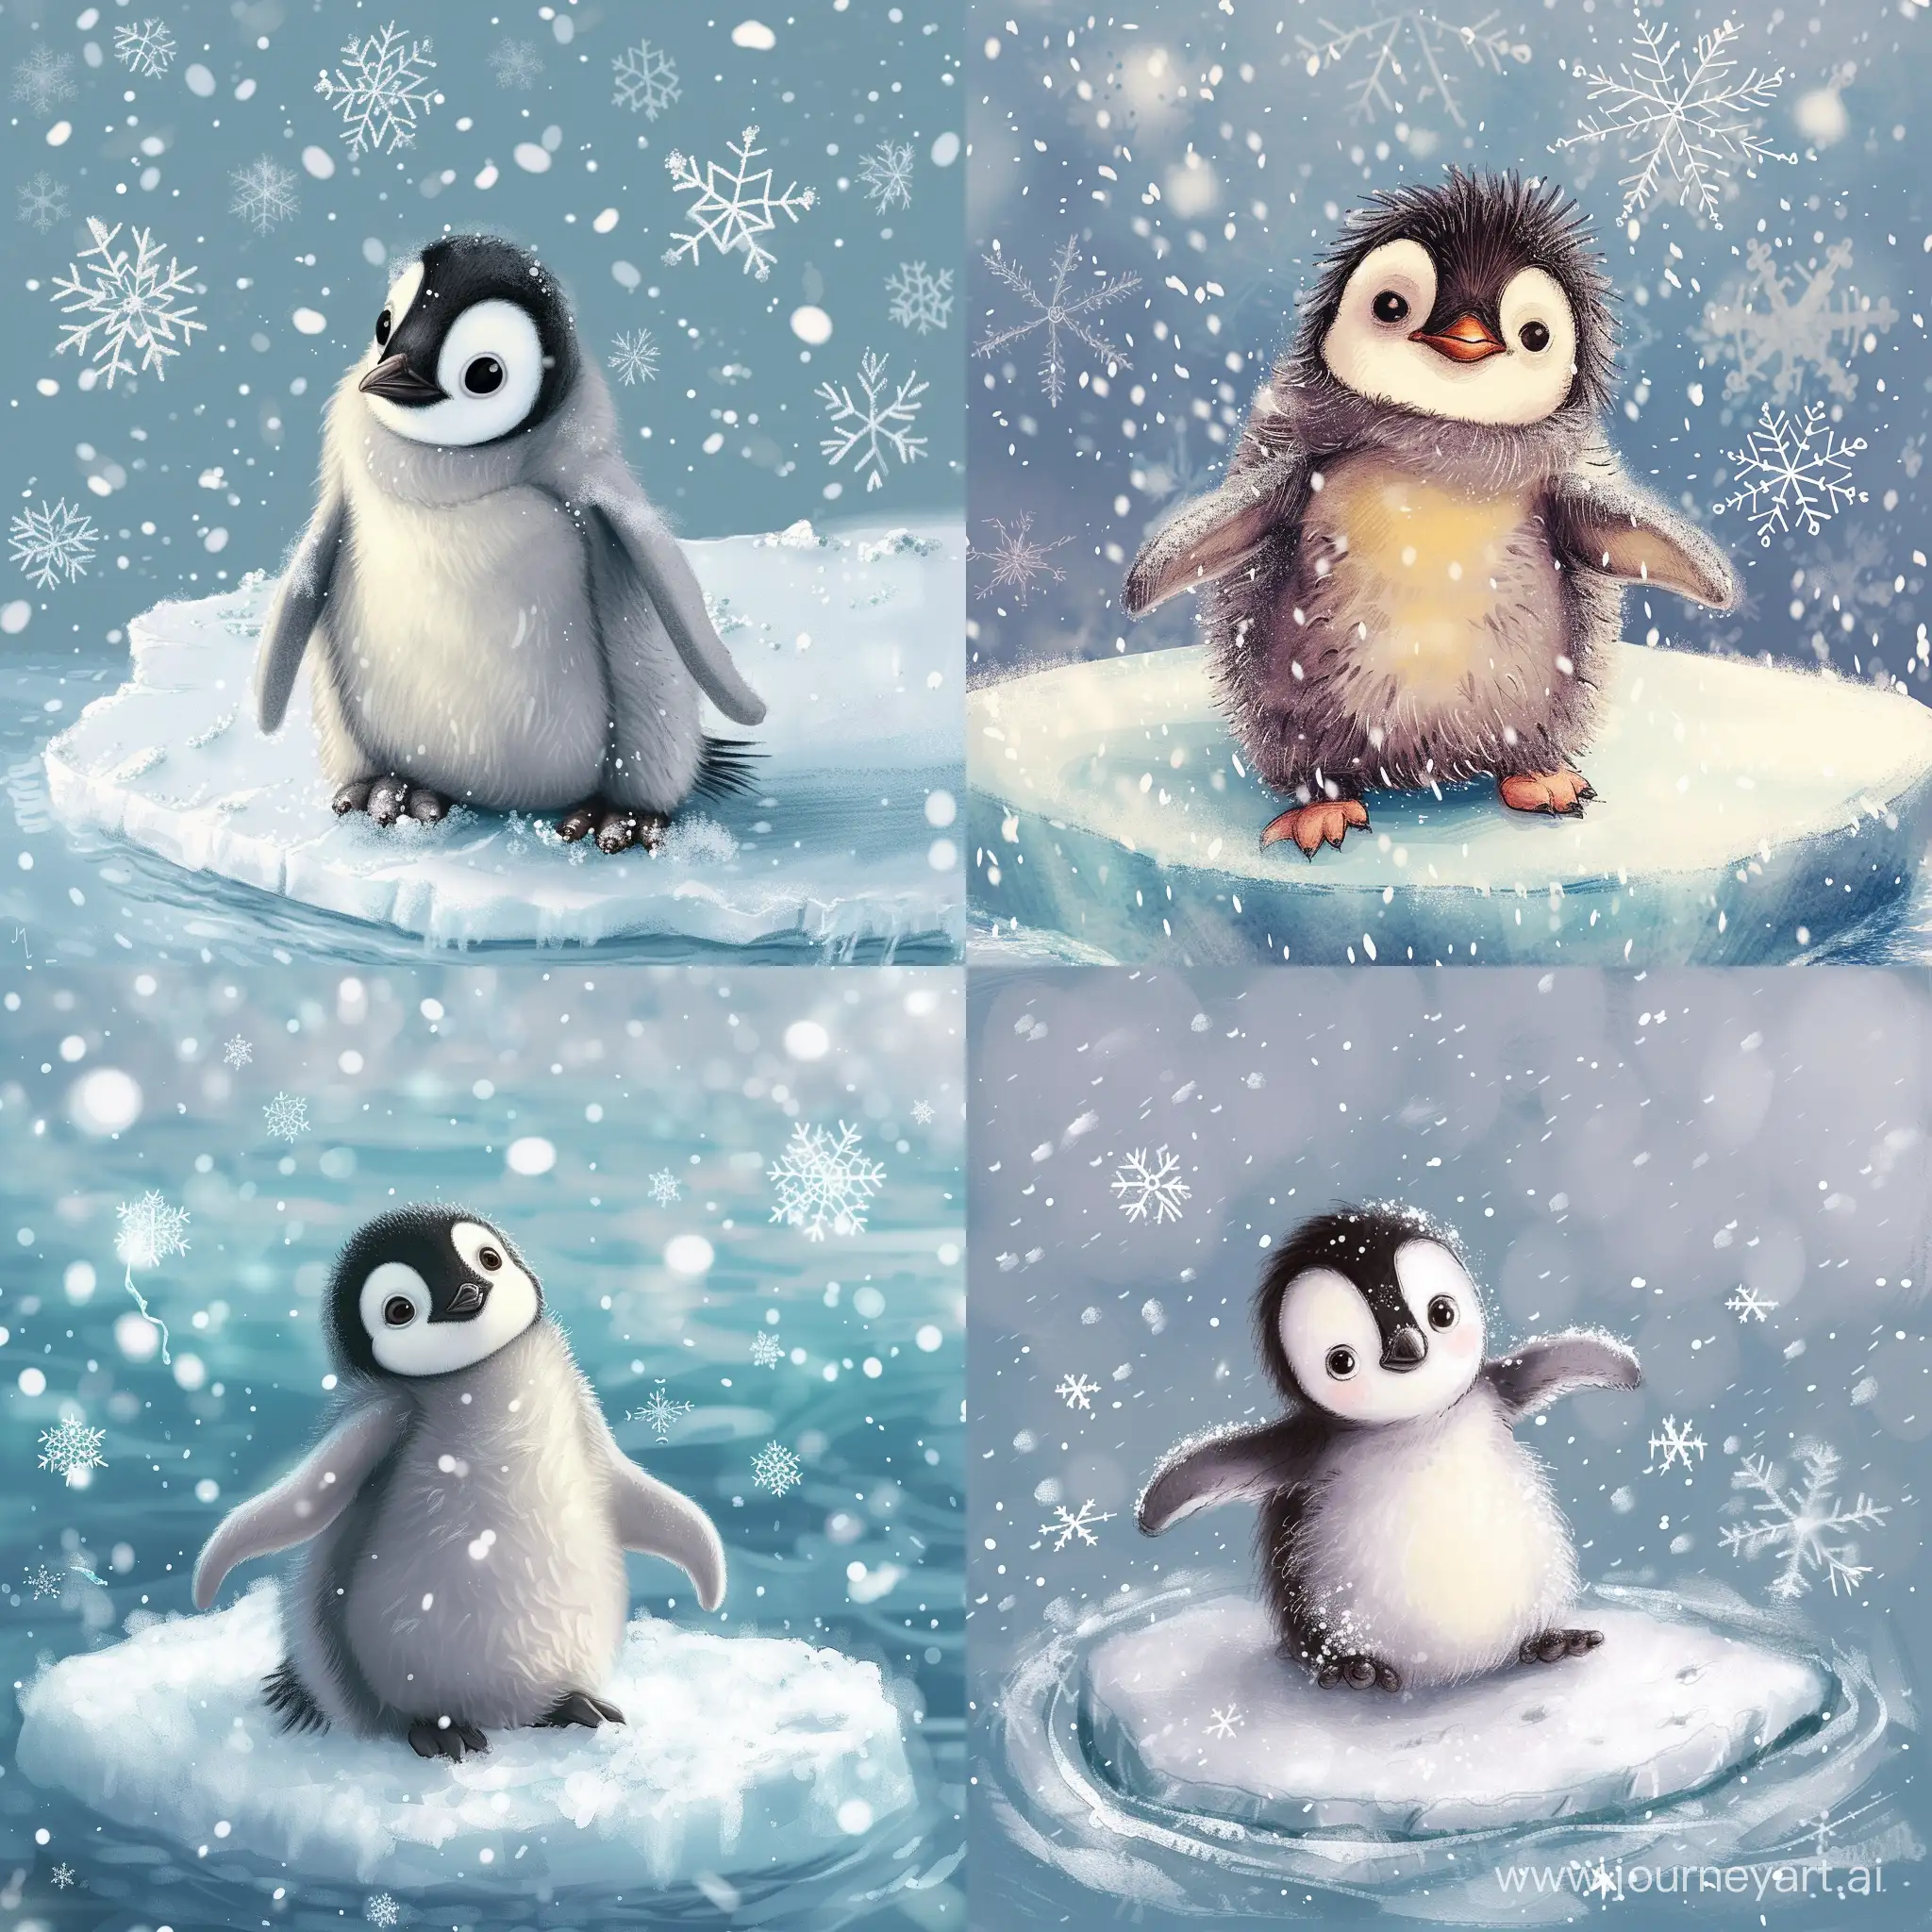 пушистый пингвинёнок на льдине, вокруг снежинки, сказочно красиво, детализация, иллюстрация 